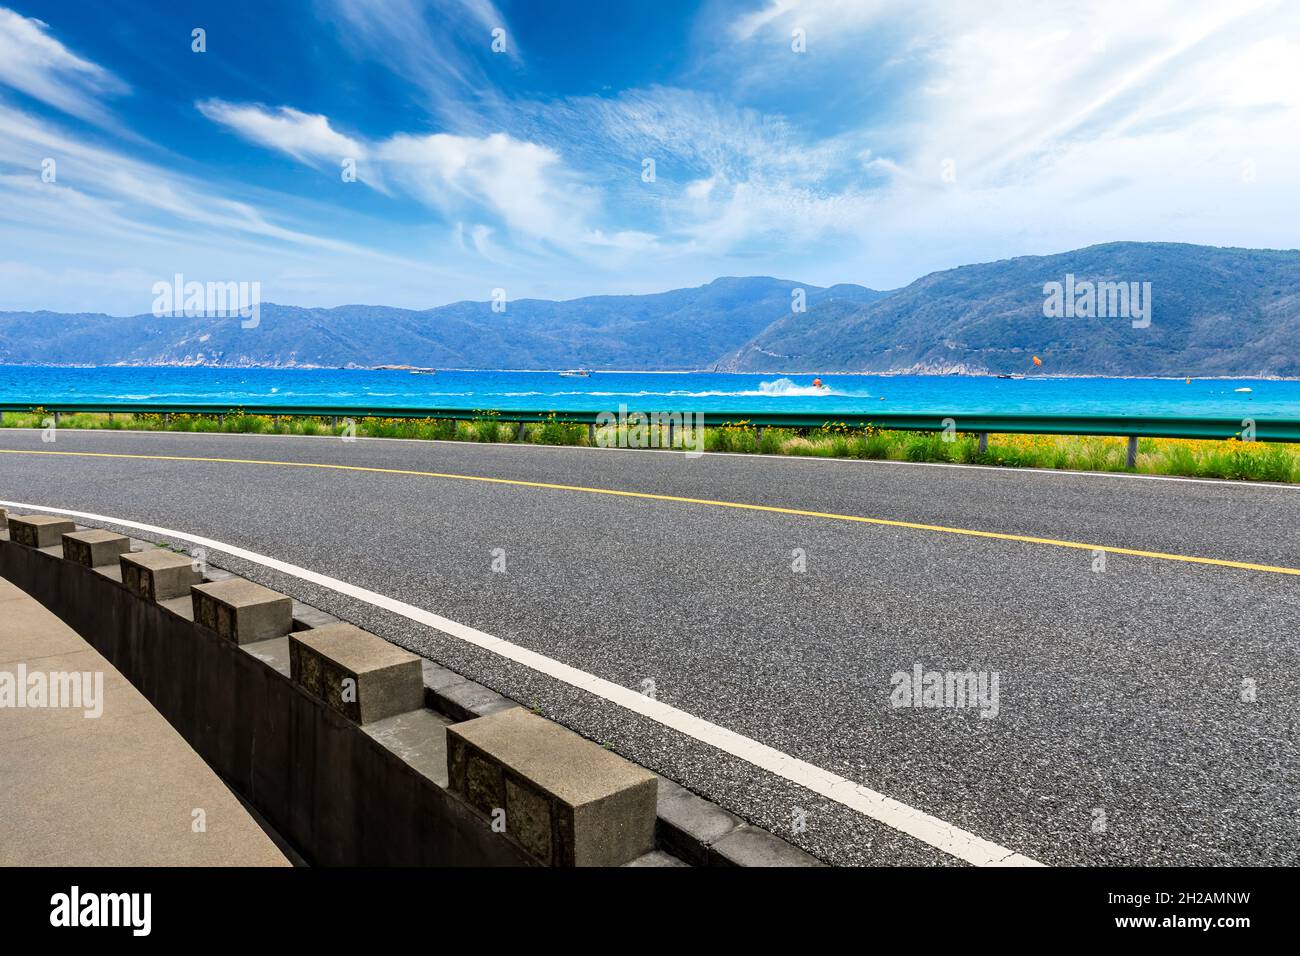 Asfalto carretera y montaña con paisaje natural de mar azul. Foto de stock